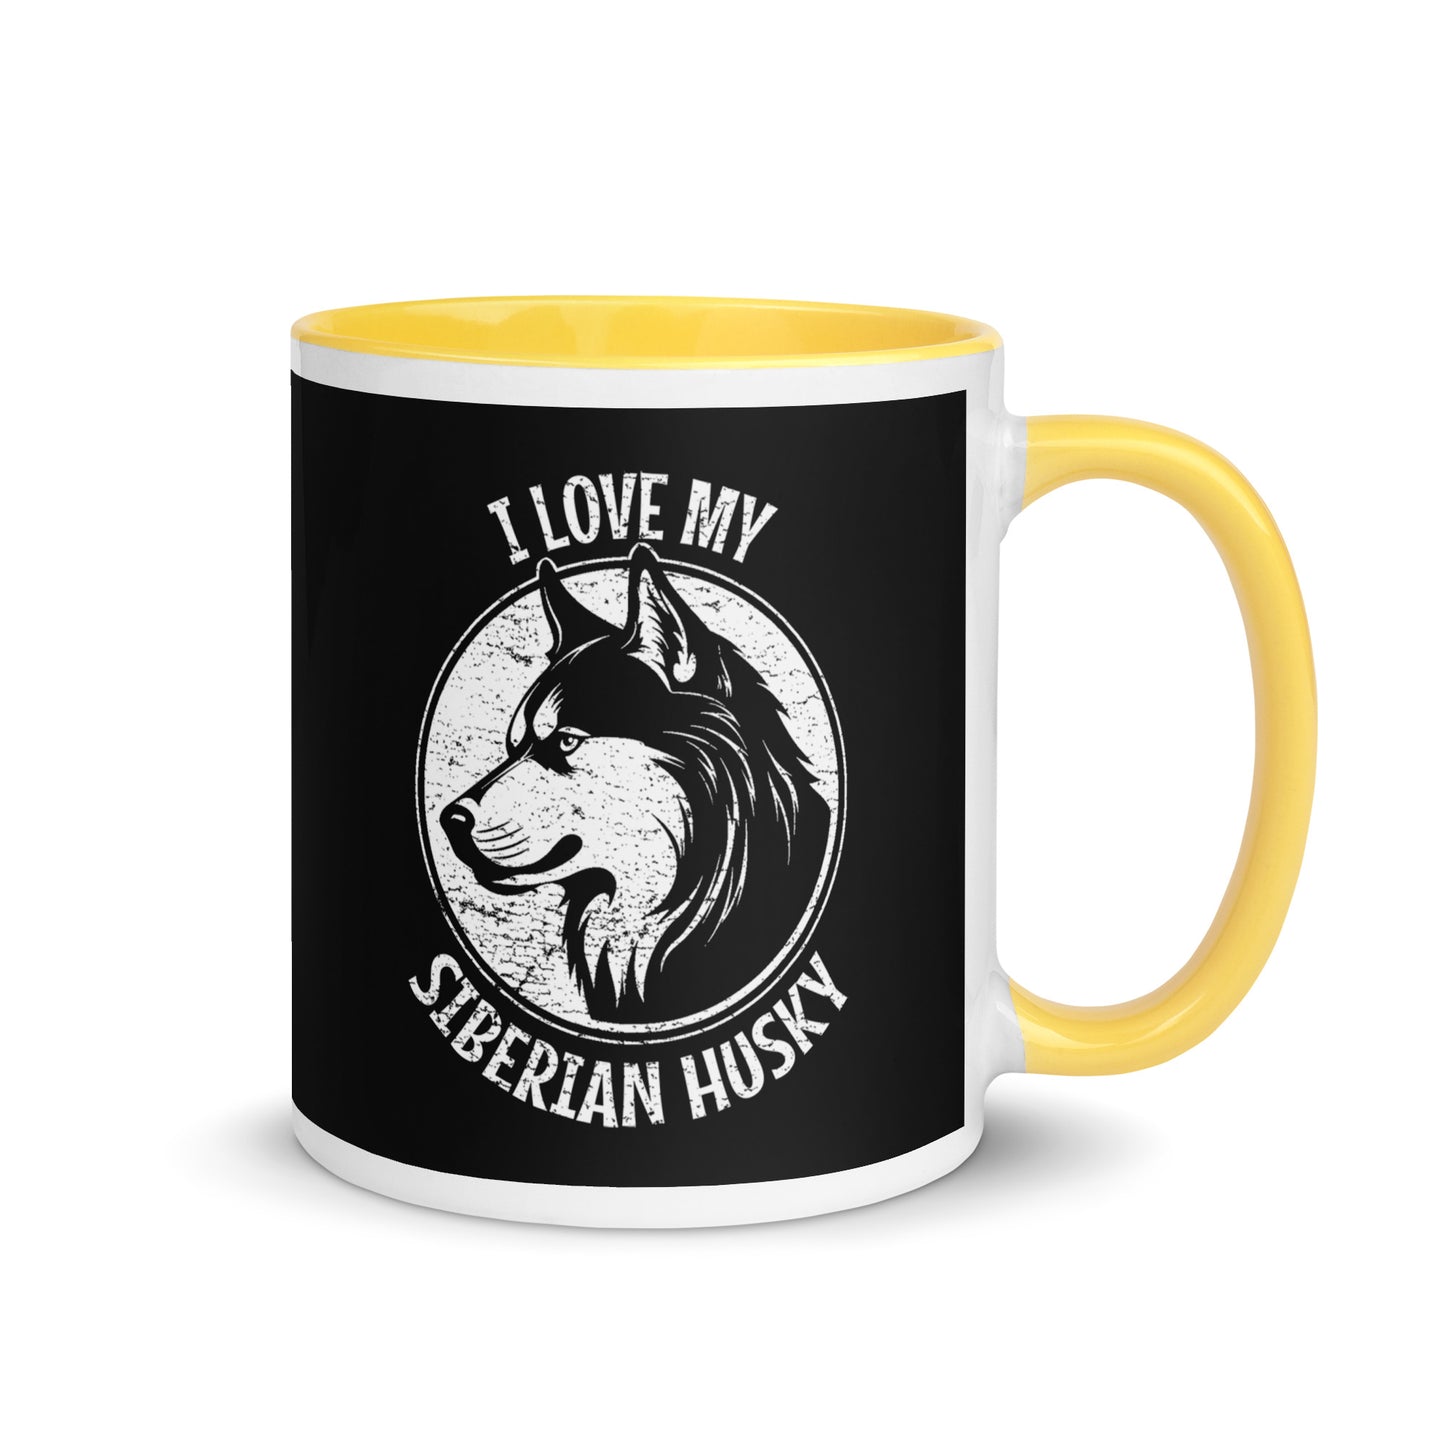 Siberian Husky Mug, Siberian Husky gift, gift for dog mom, custom dog gift, dog owner gift, pet memorial gift